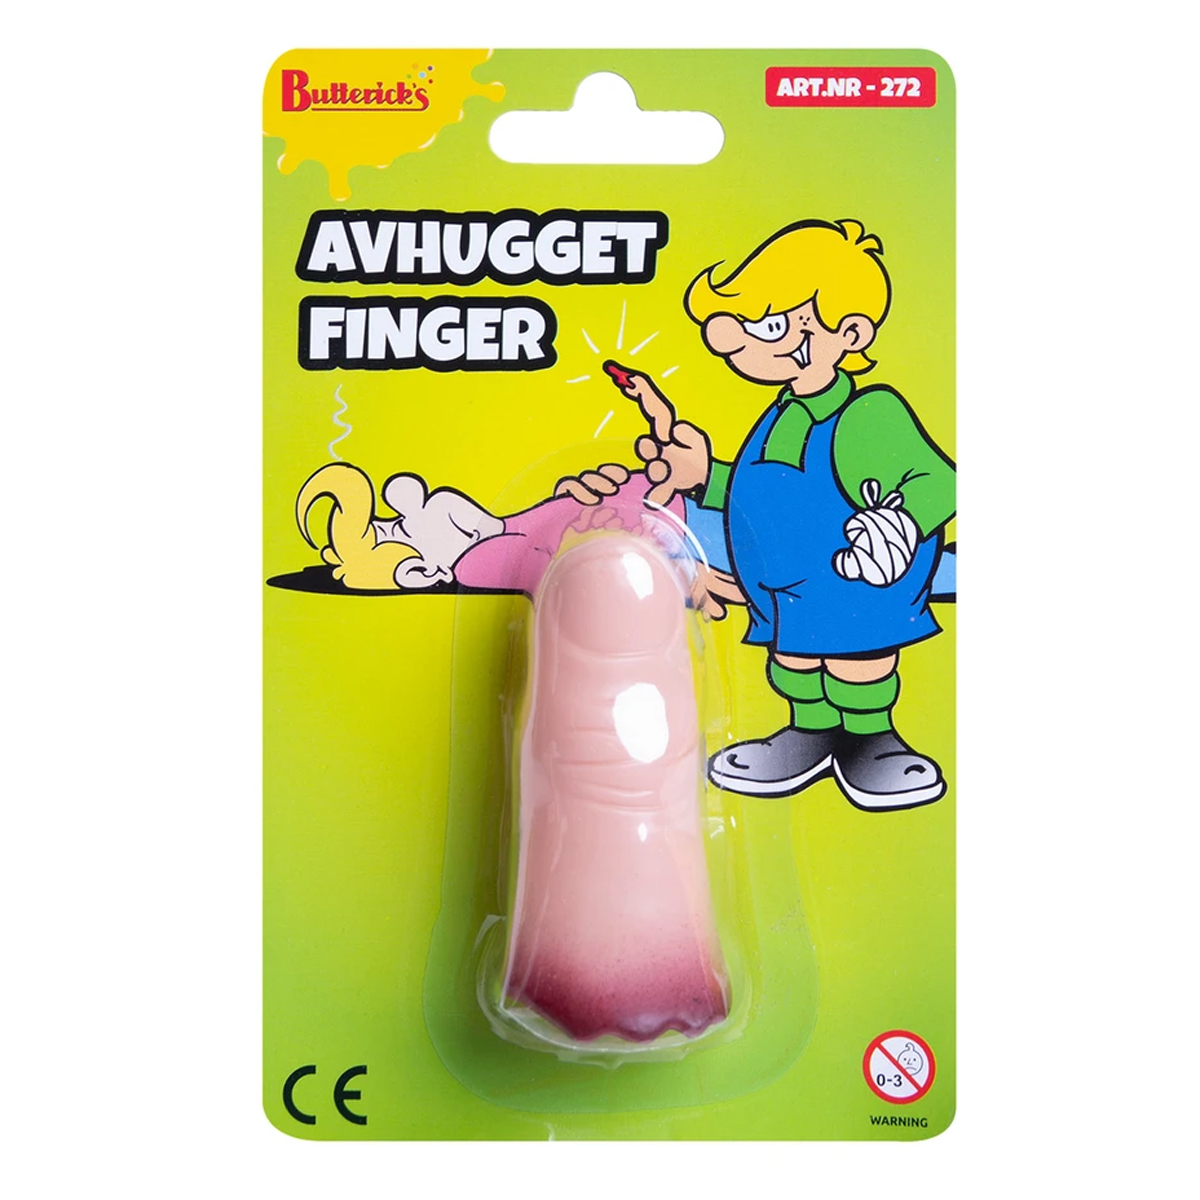 Avhugget finger